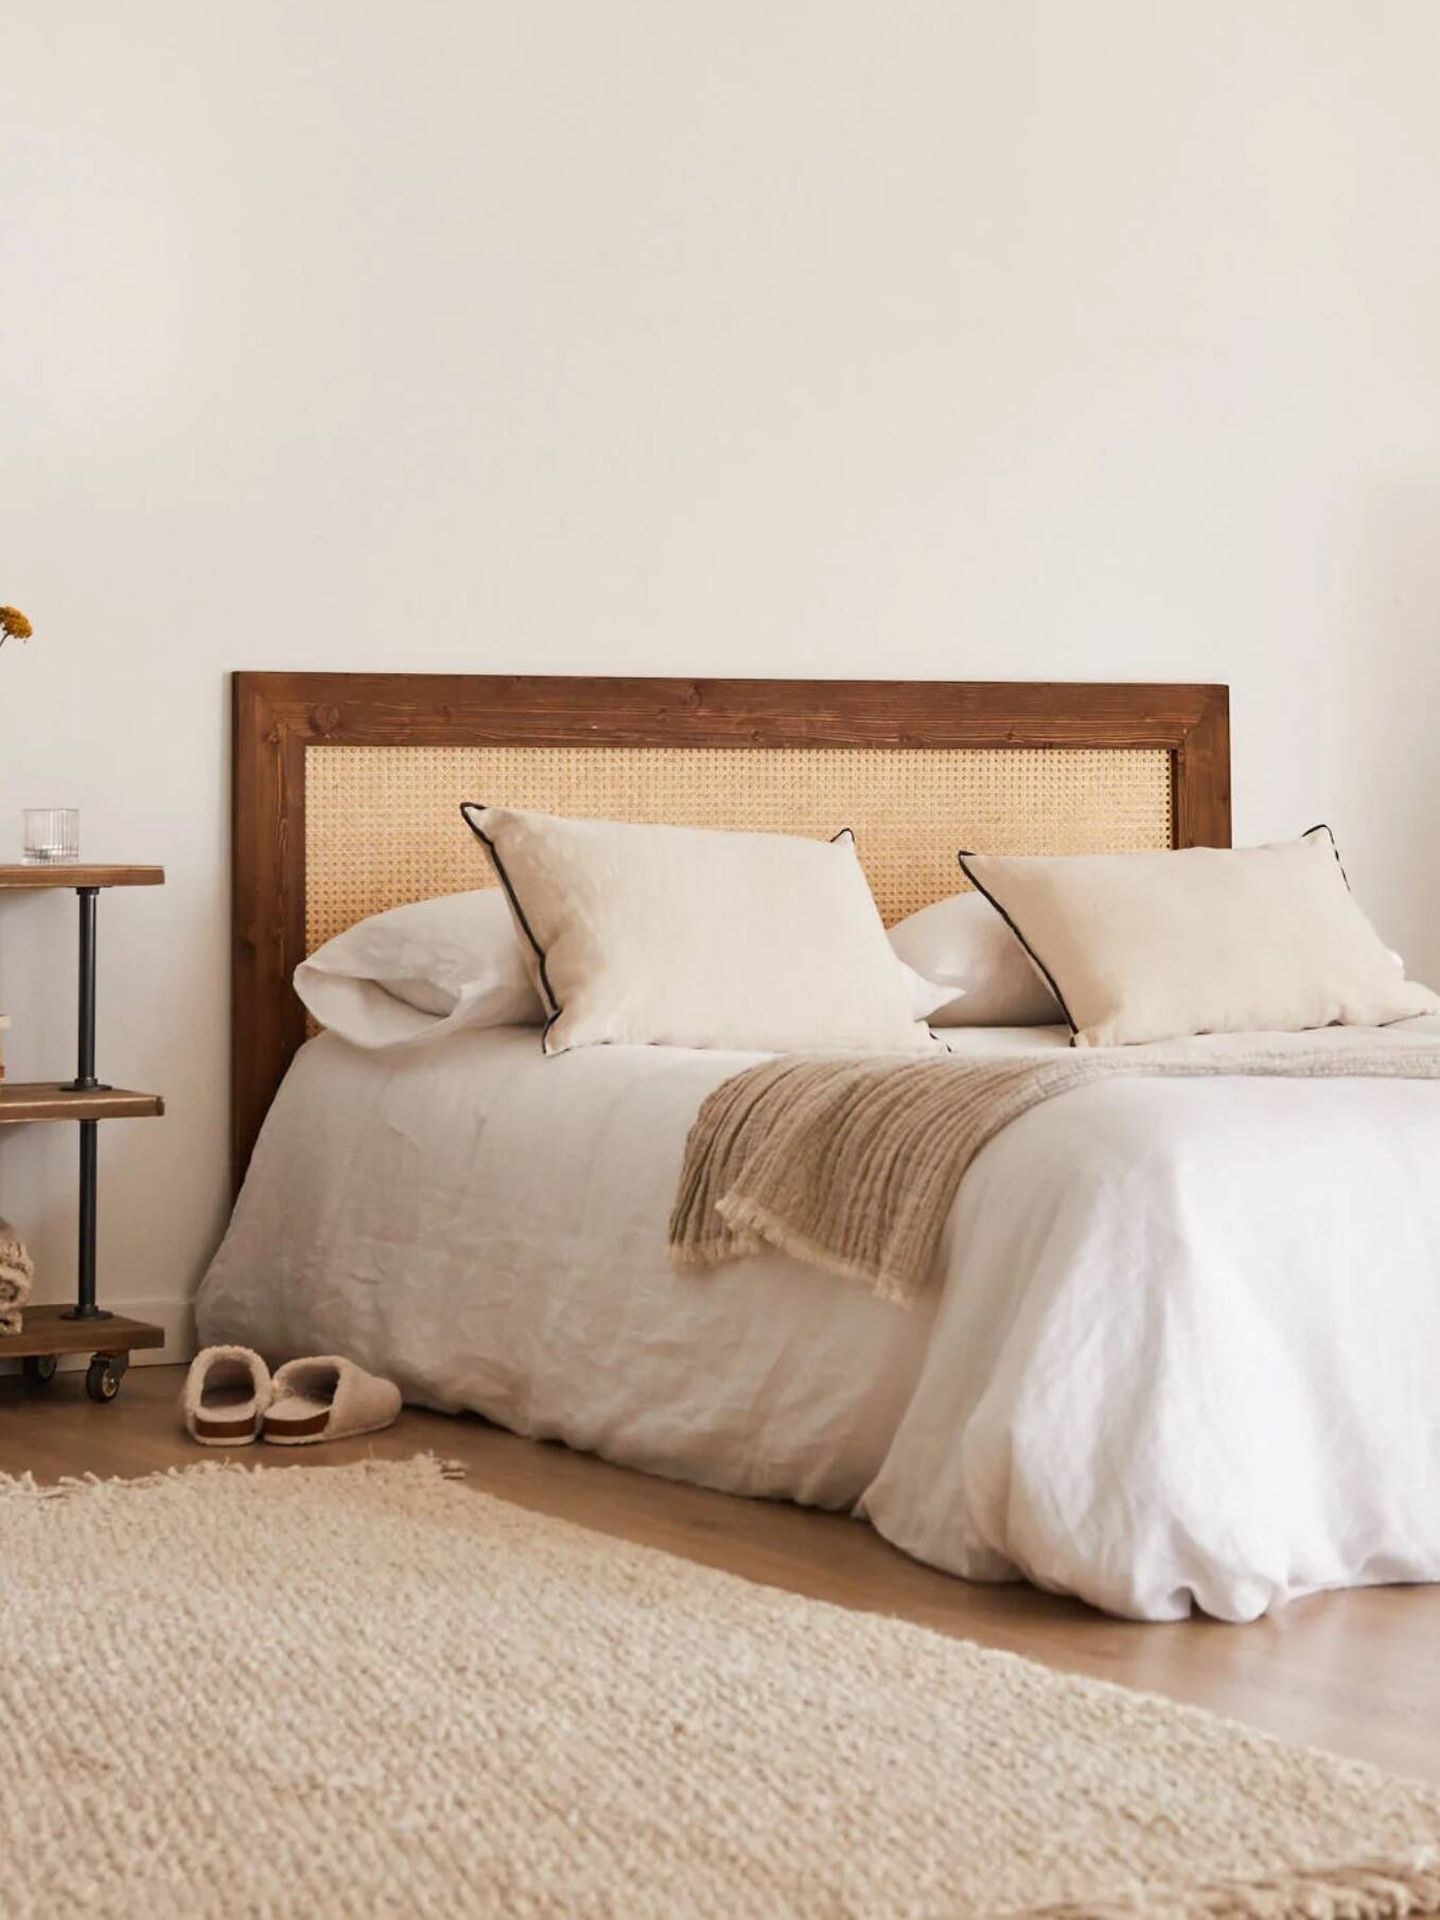 Cabeceros de cama para cambiar el aspecto de tu dormitorio. (Cortesía/Hannun)